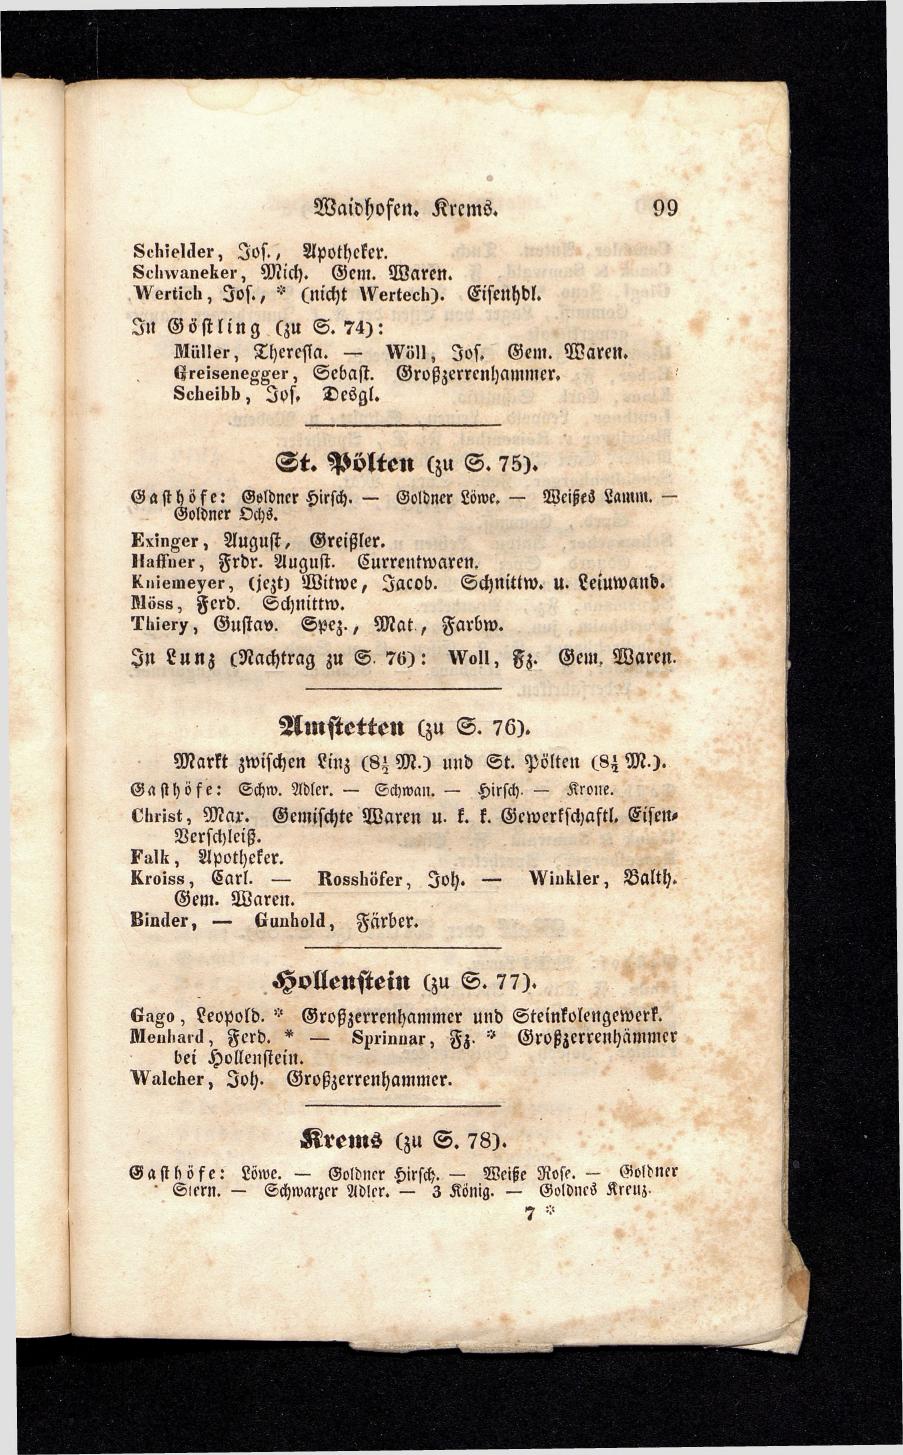 Grosses Adressbuch der Kaufleute. No. 13. Oesterreich ober u. unter der Enns 1844 - Seite 103